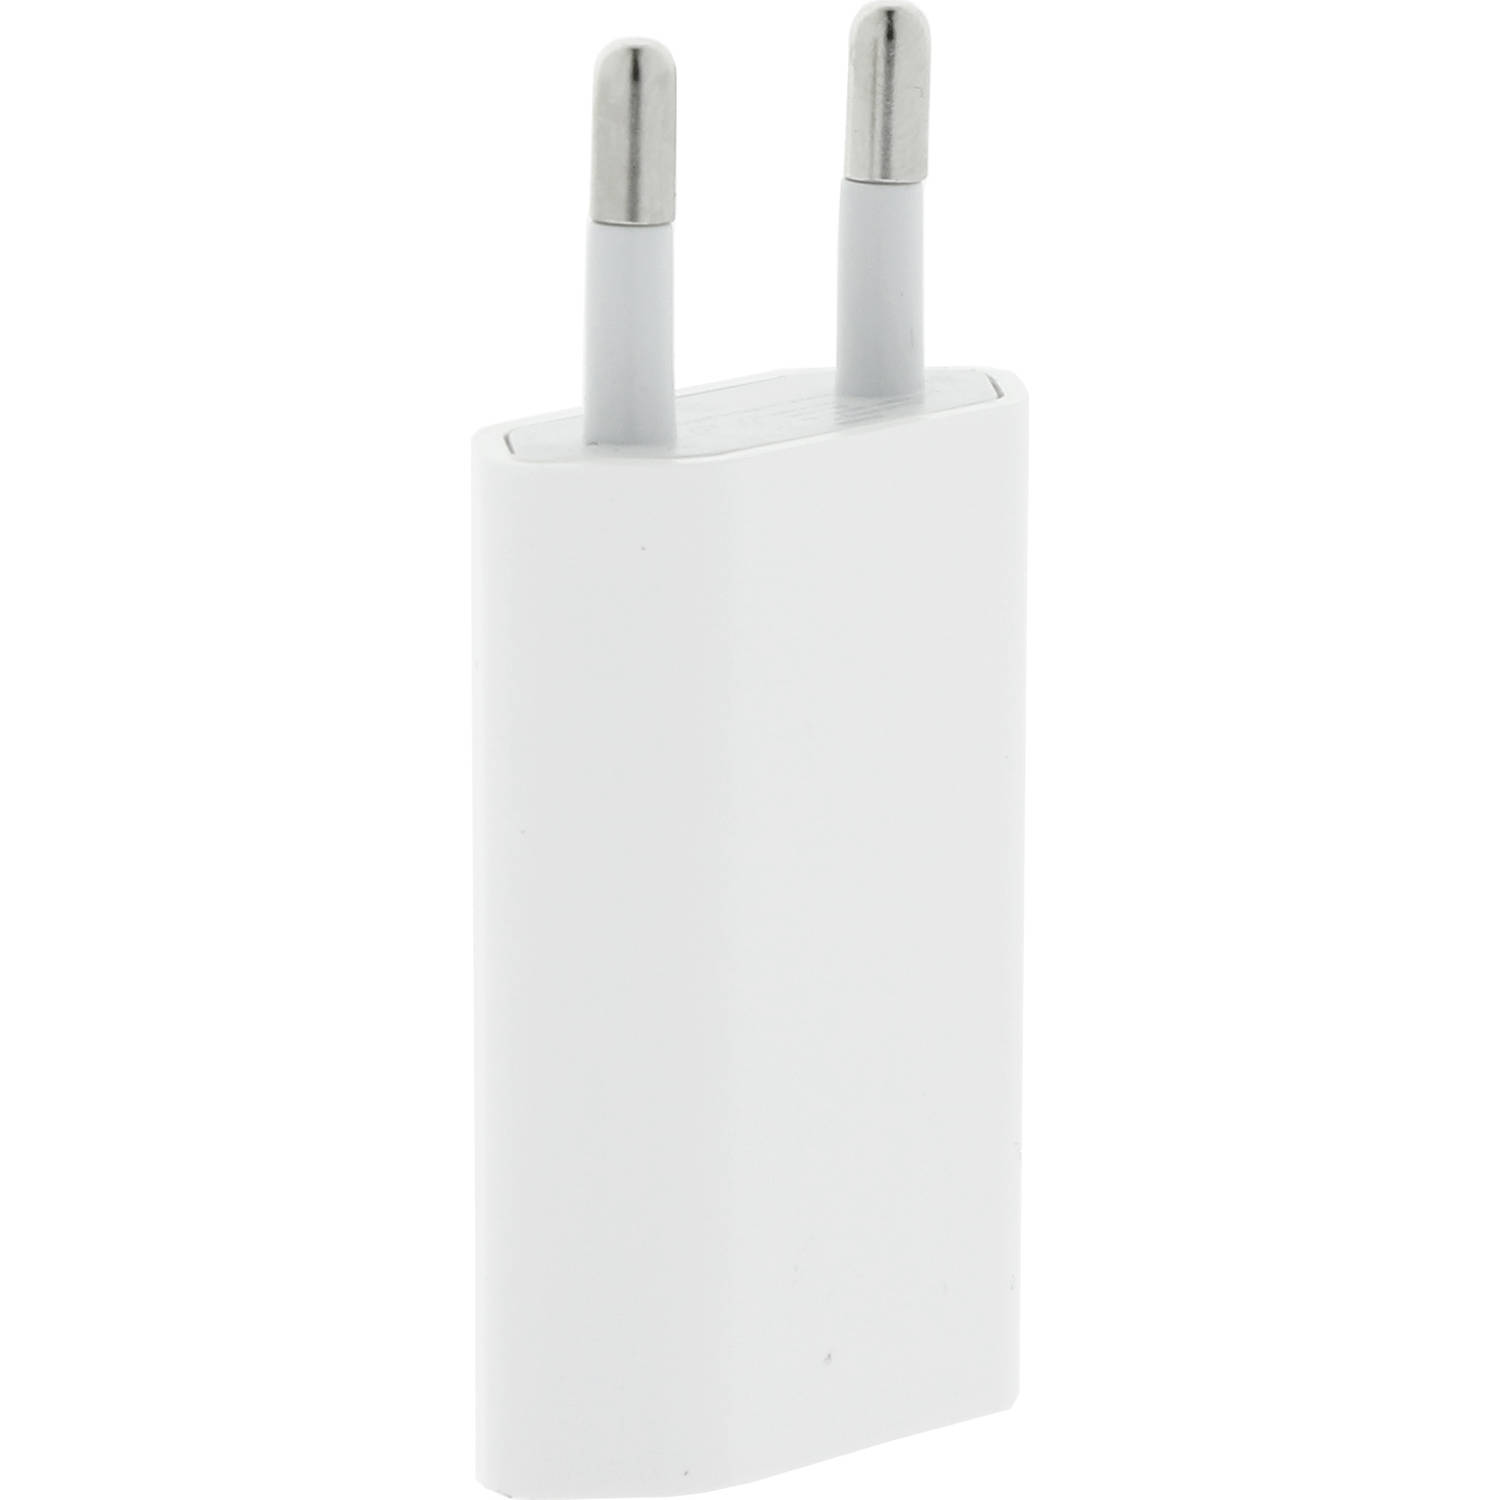 USB Adapter 5W voor iPhone